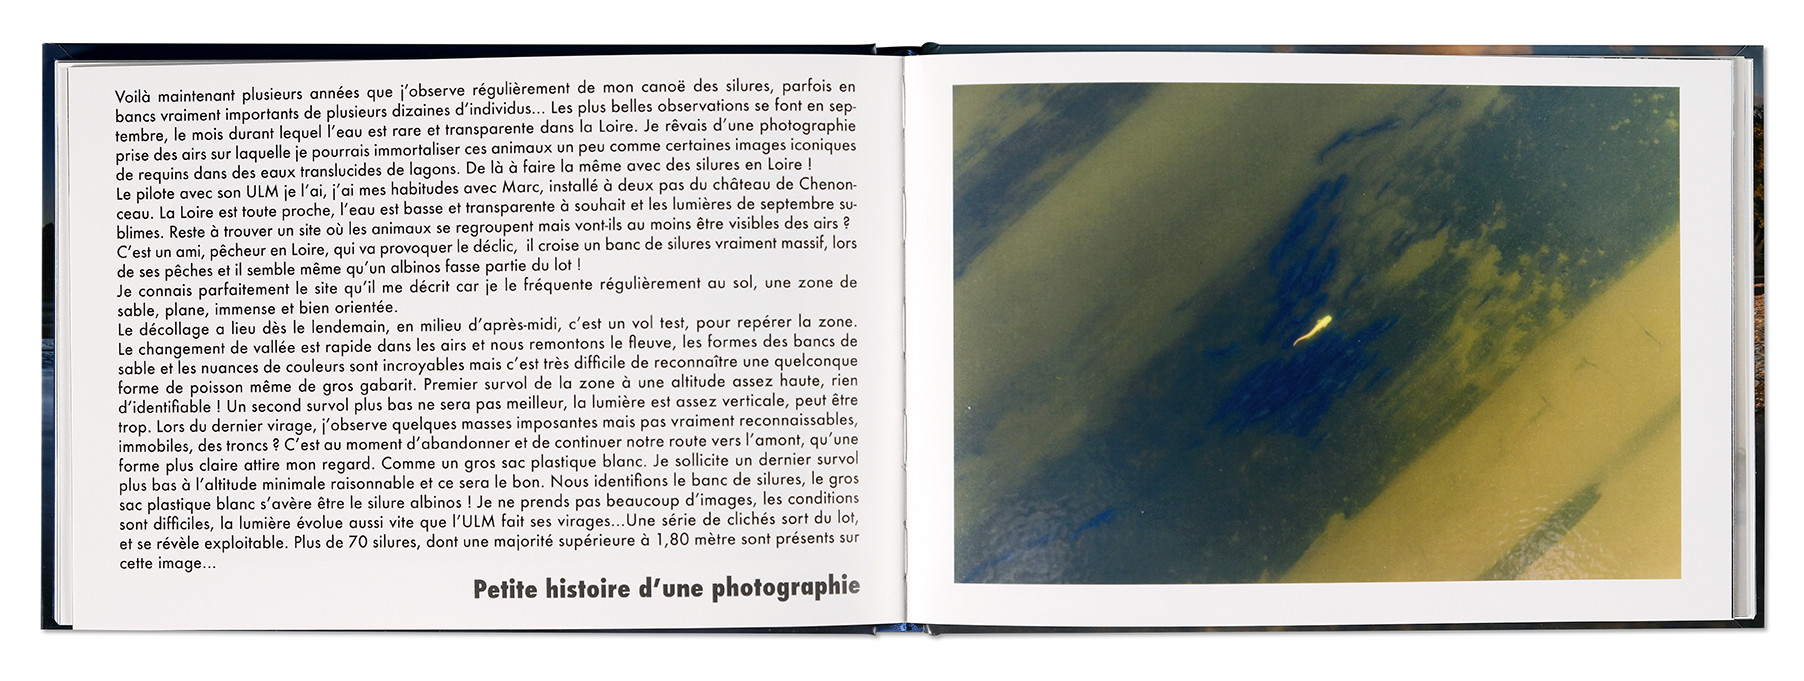 Instants, Le petit livre de la Loire, Jeah-François Souchard, Editions IDLoire, intérieur